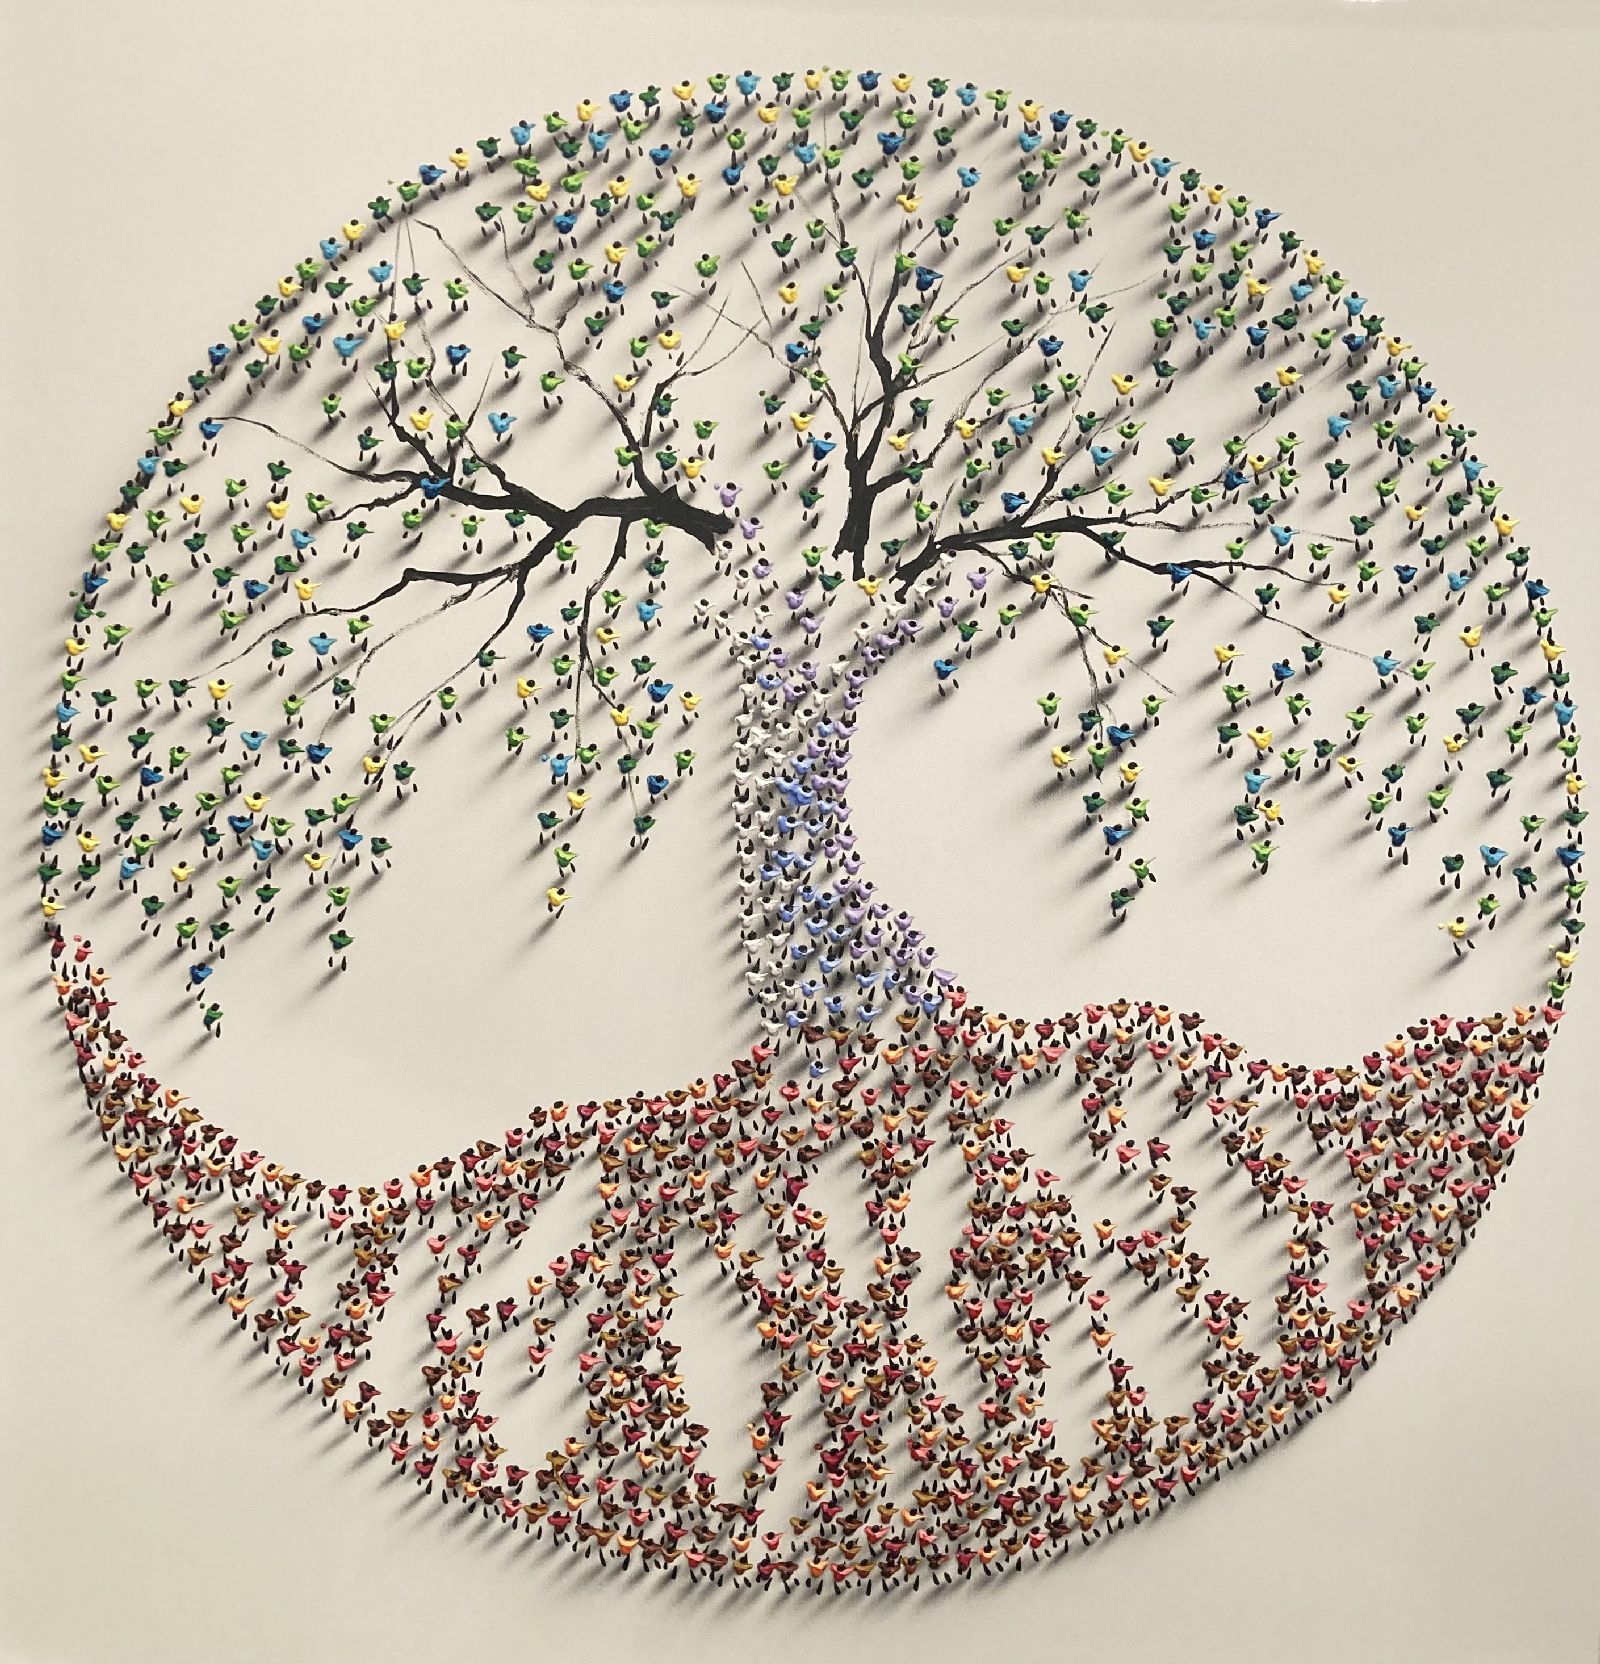 Francisco Bartus - Tree of life